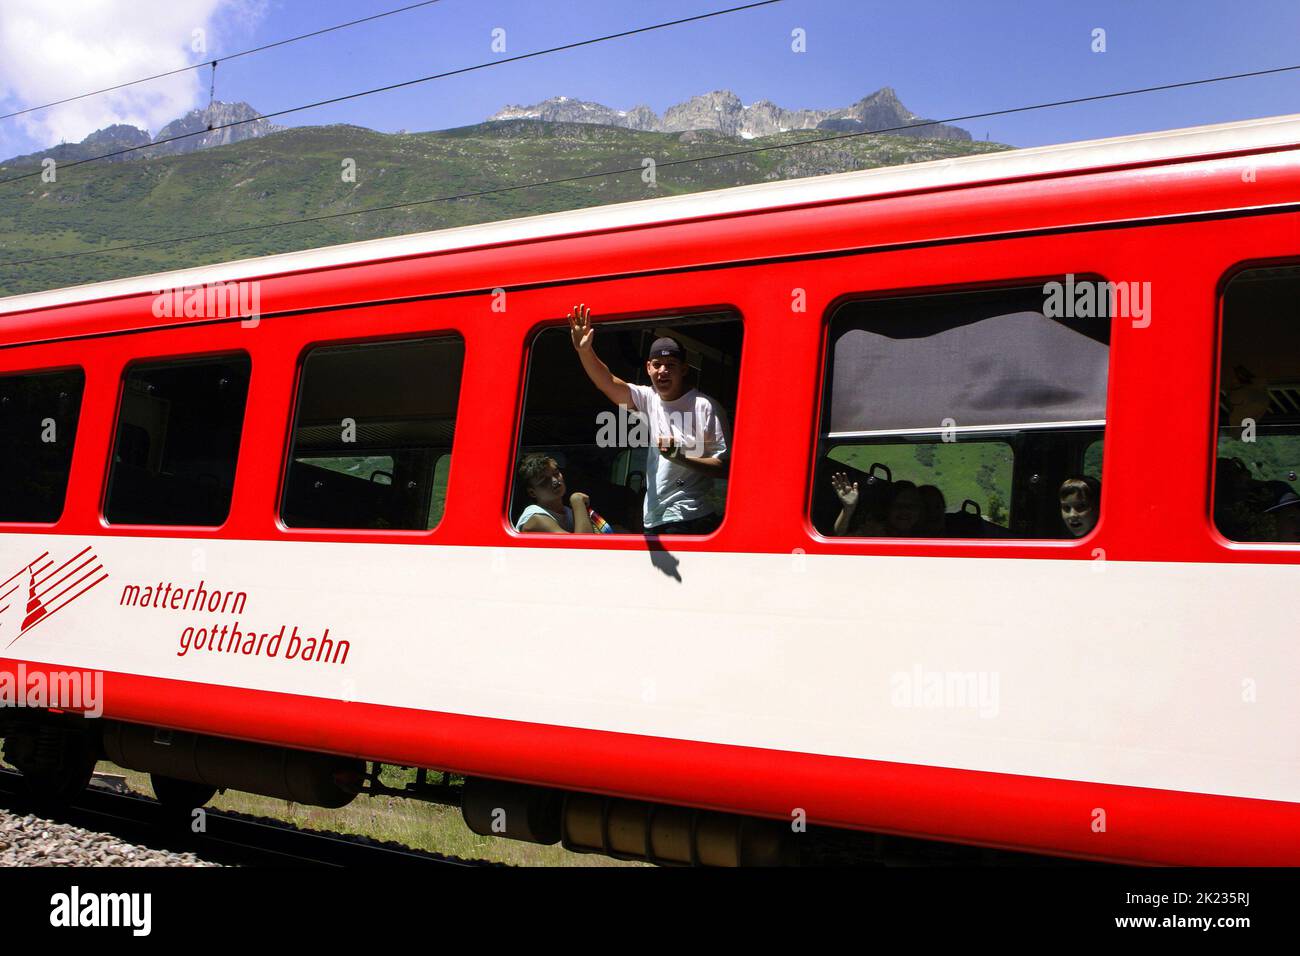 Man waving from the Matterhorn Gotthard Bahn train, Swiss Alps, Switzerland Stock Photo